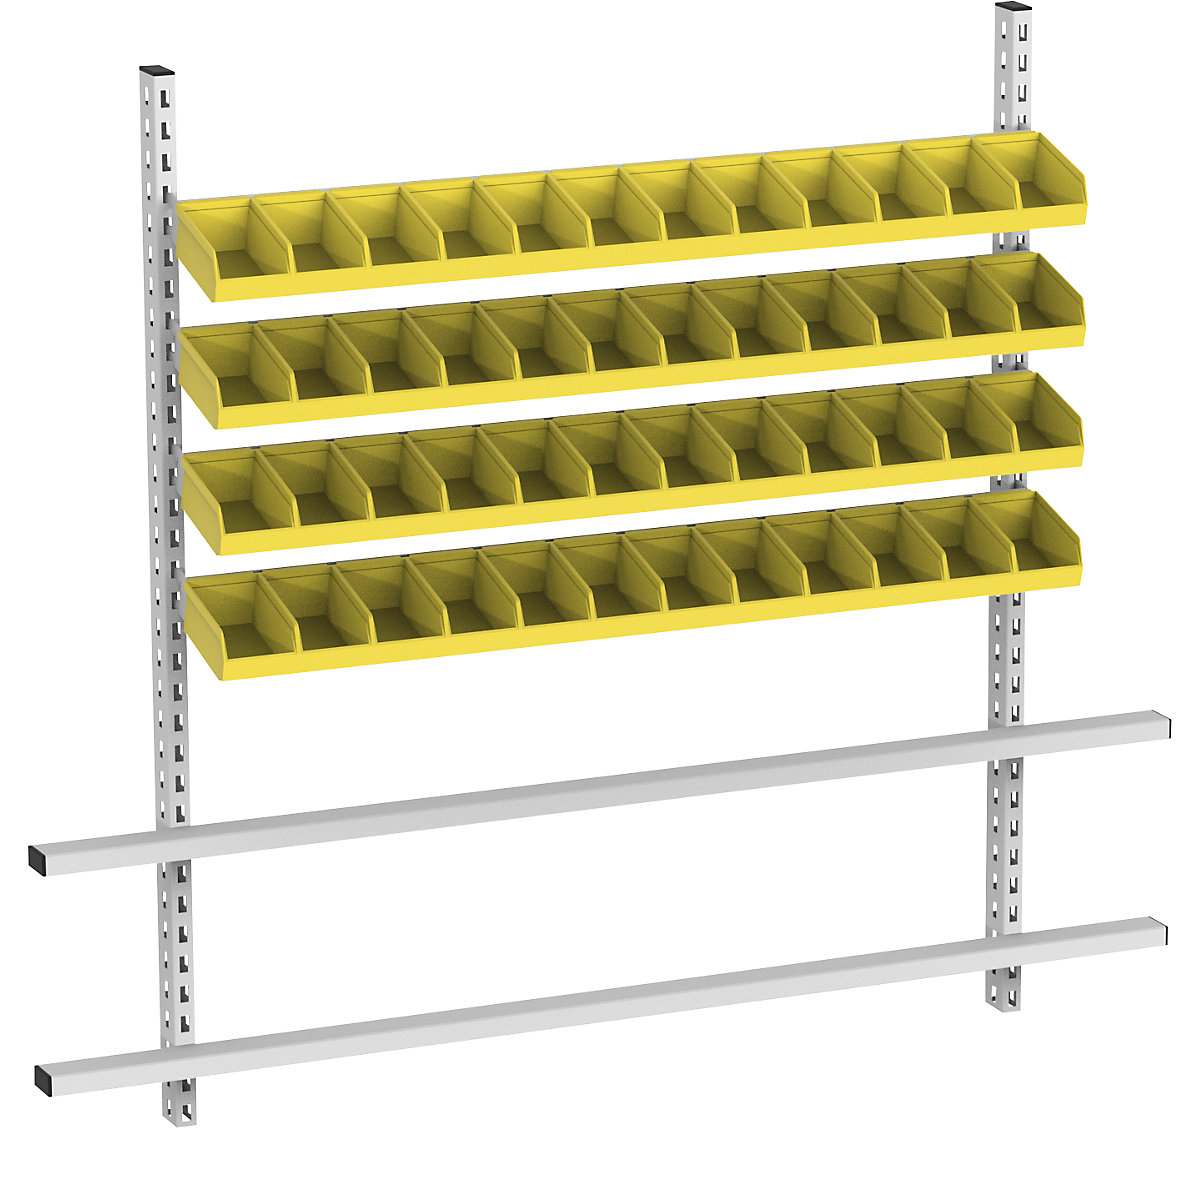 Superstructure de table avec bacs à bec, largeur 1685 mm, 4 rails avec 48 bacs, bacs jaunes-1